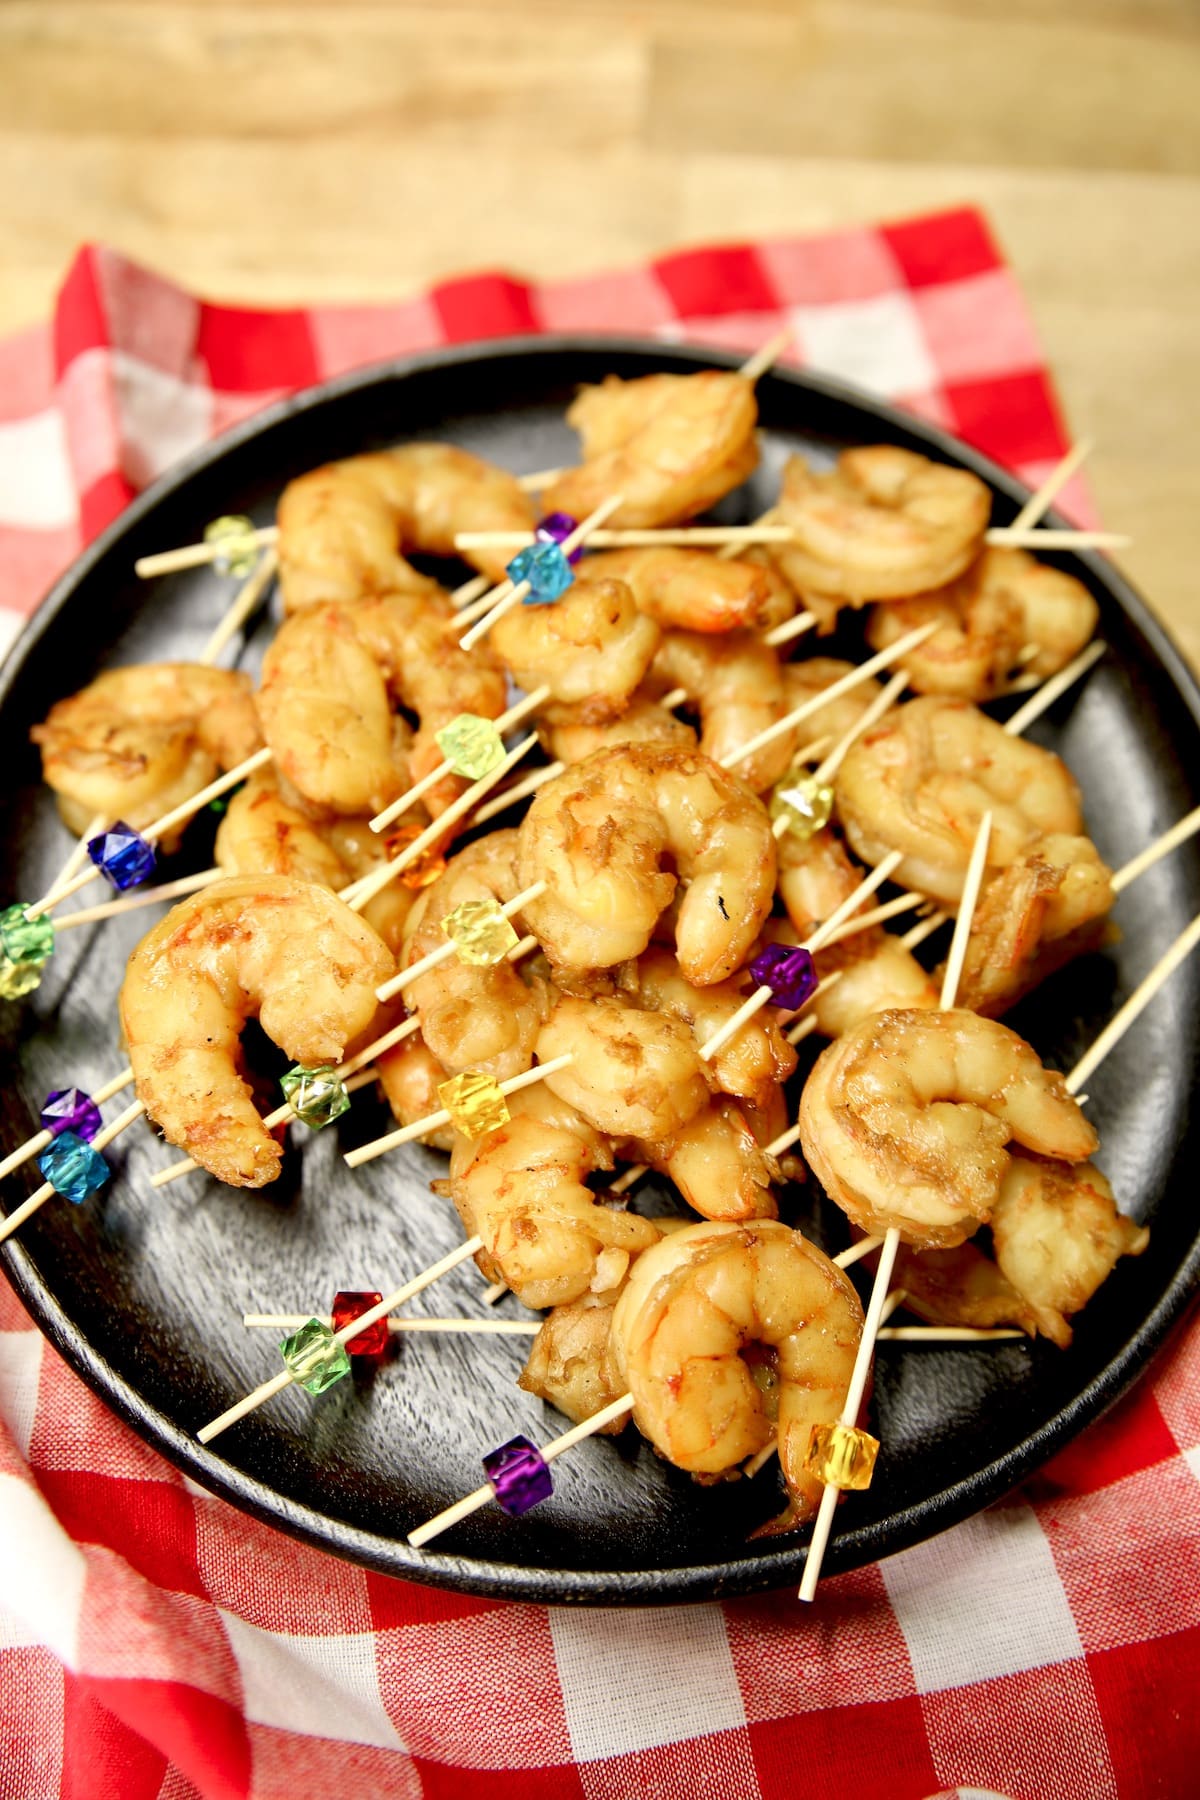 Platter of shrimp on appetizer picks.